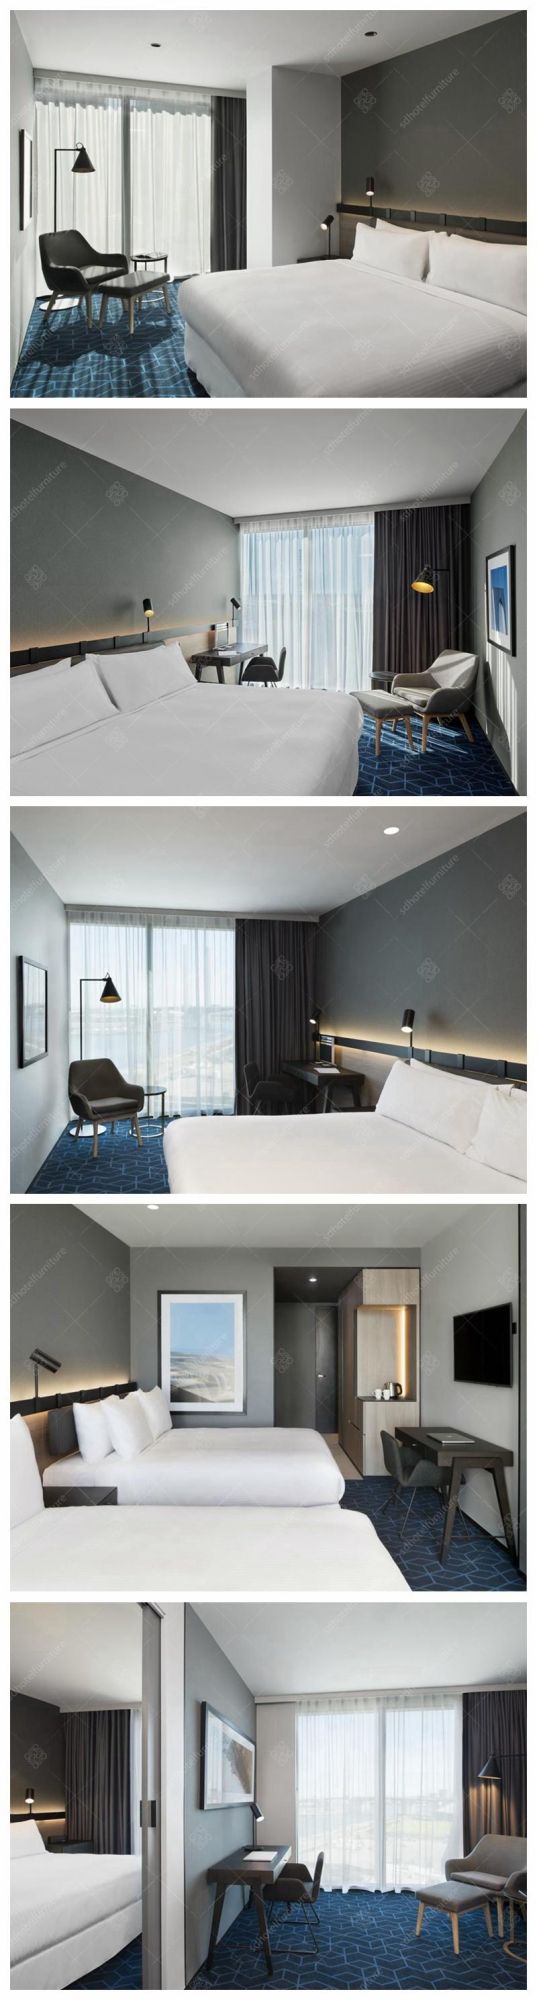 Fashion Artistic Design Commercial Hotel Bedroom Furniture Sets for Sale